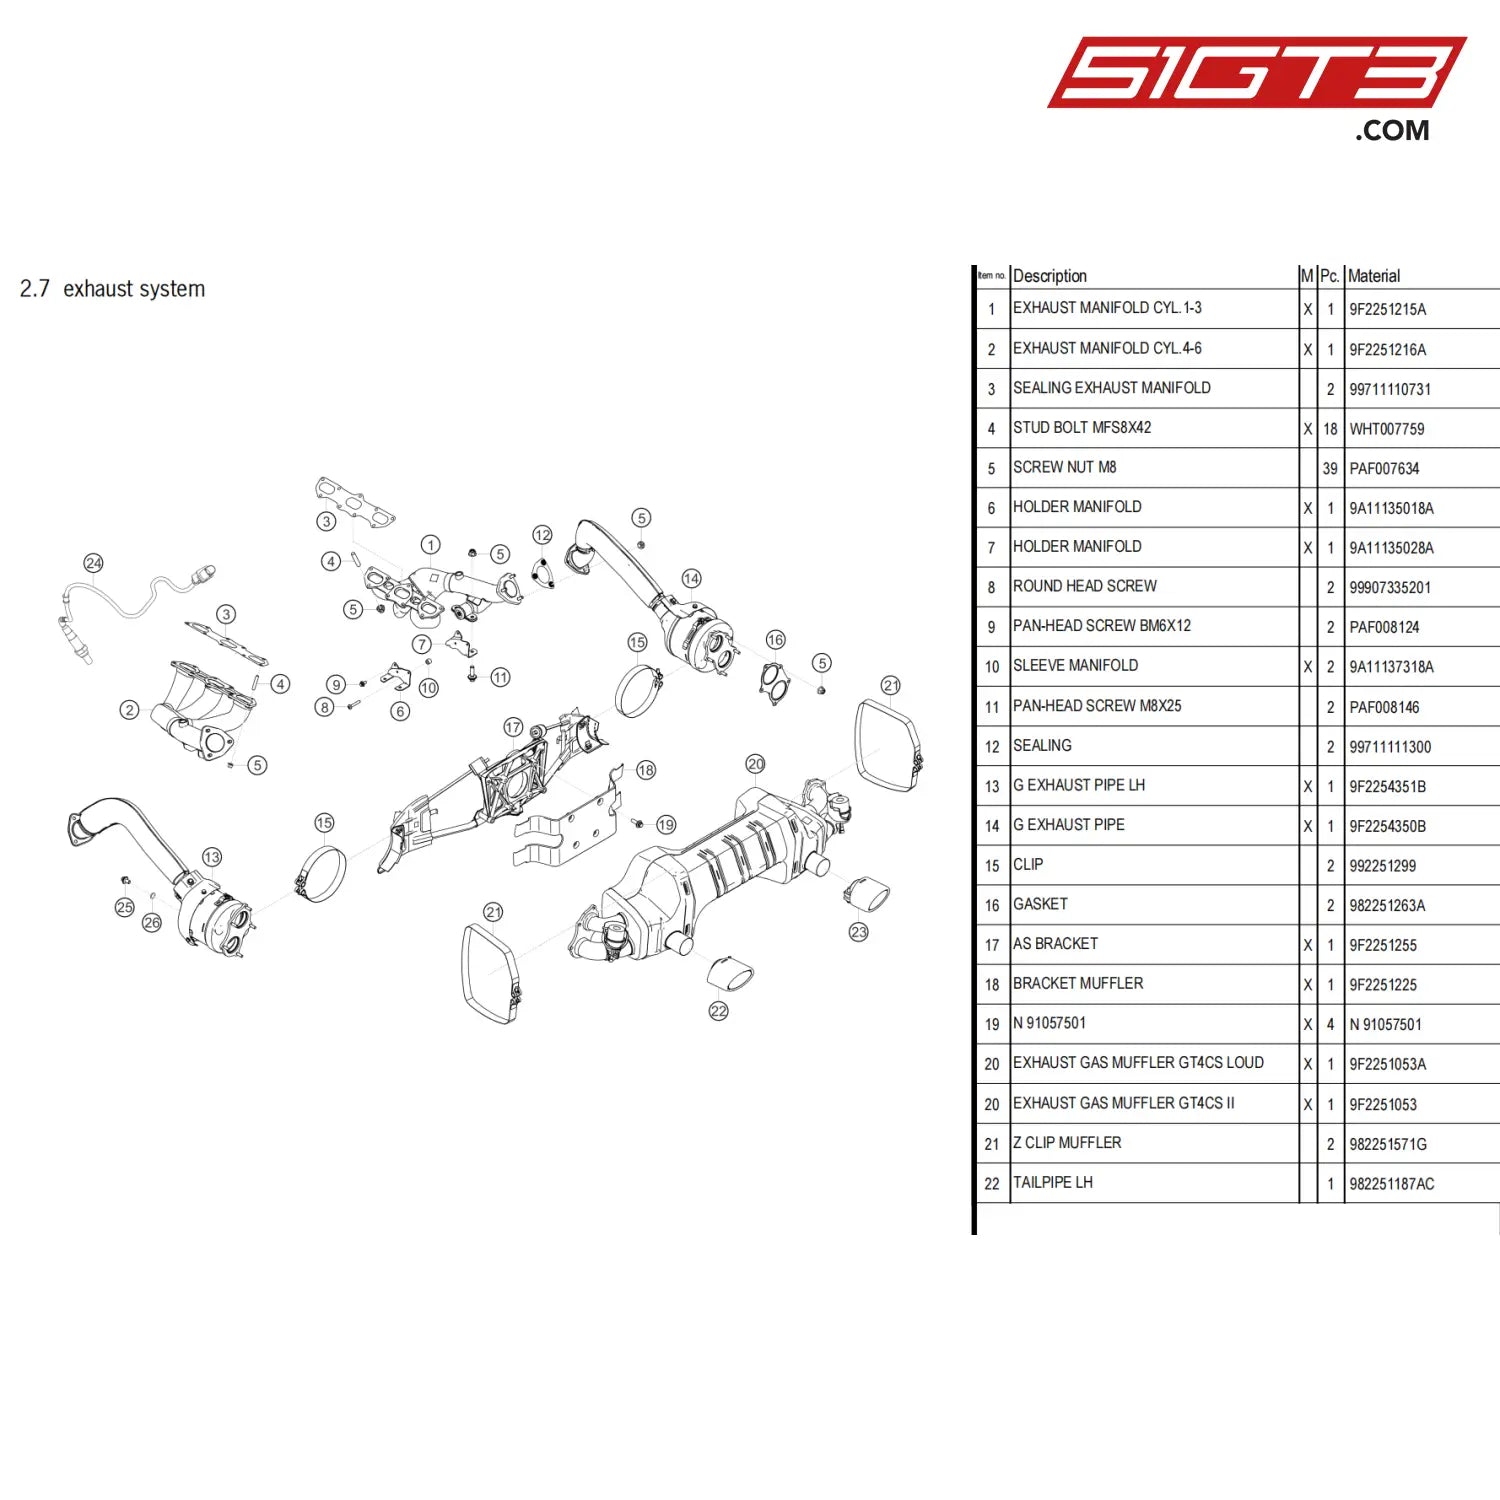 Gasket - 982251263A [Porsche 718 Cayman Gt4 Clubsport] Exhaust System